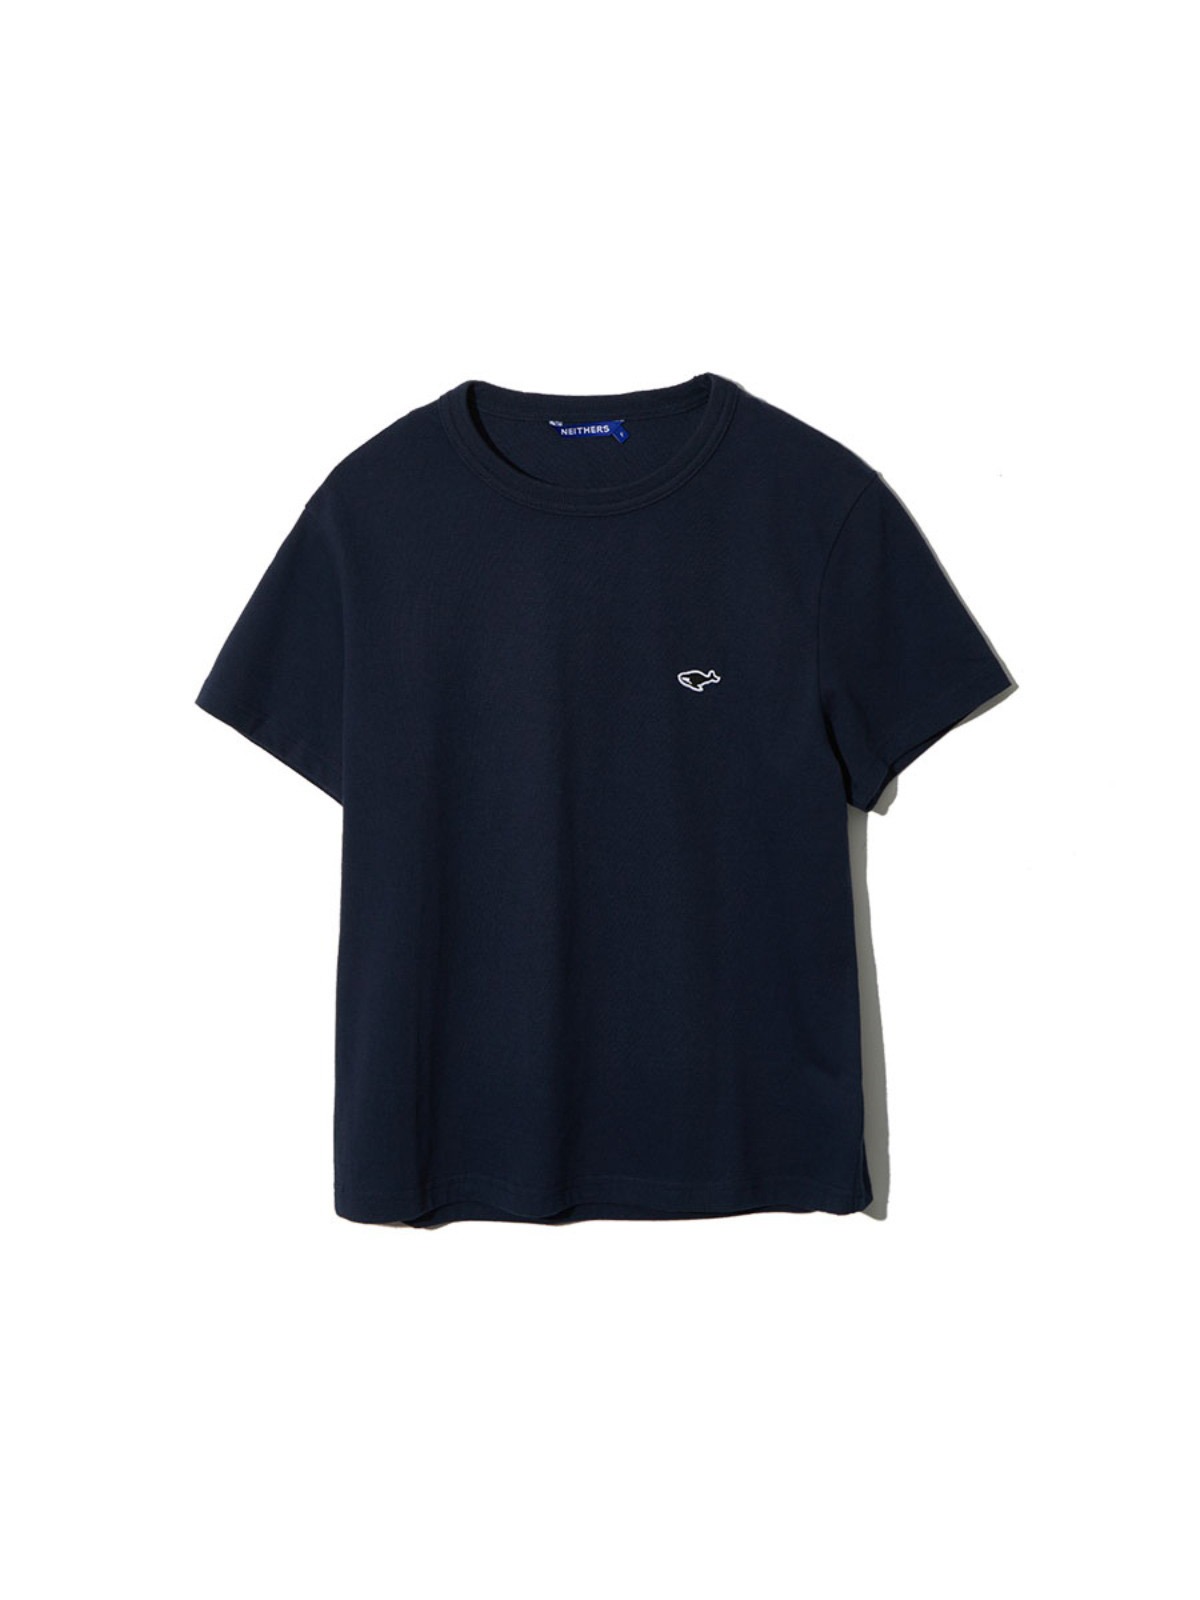 Basic S/S T-Shirt For Women (Navy)